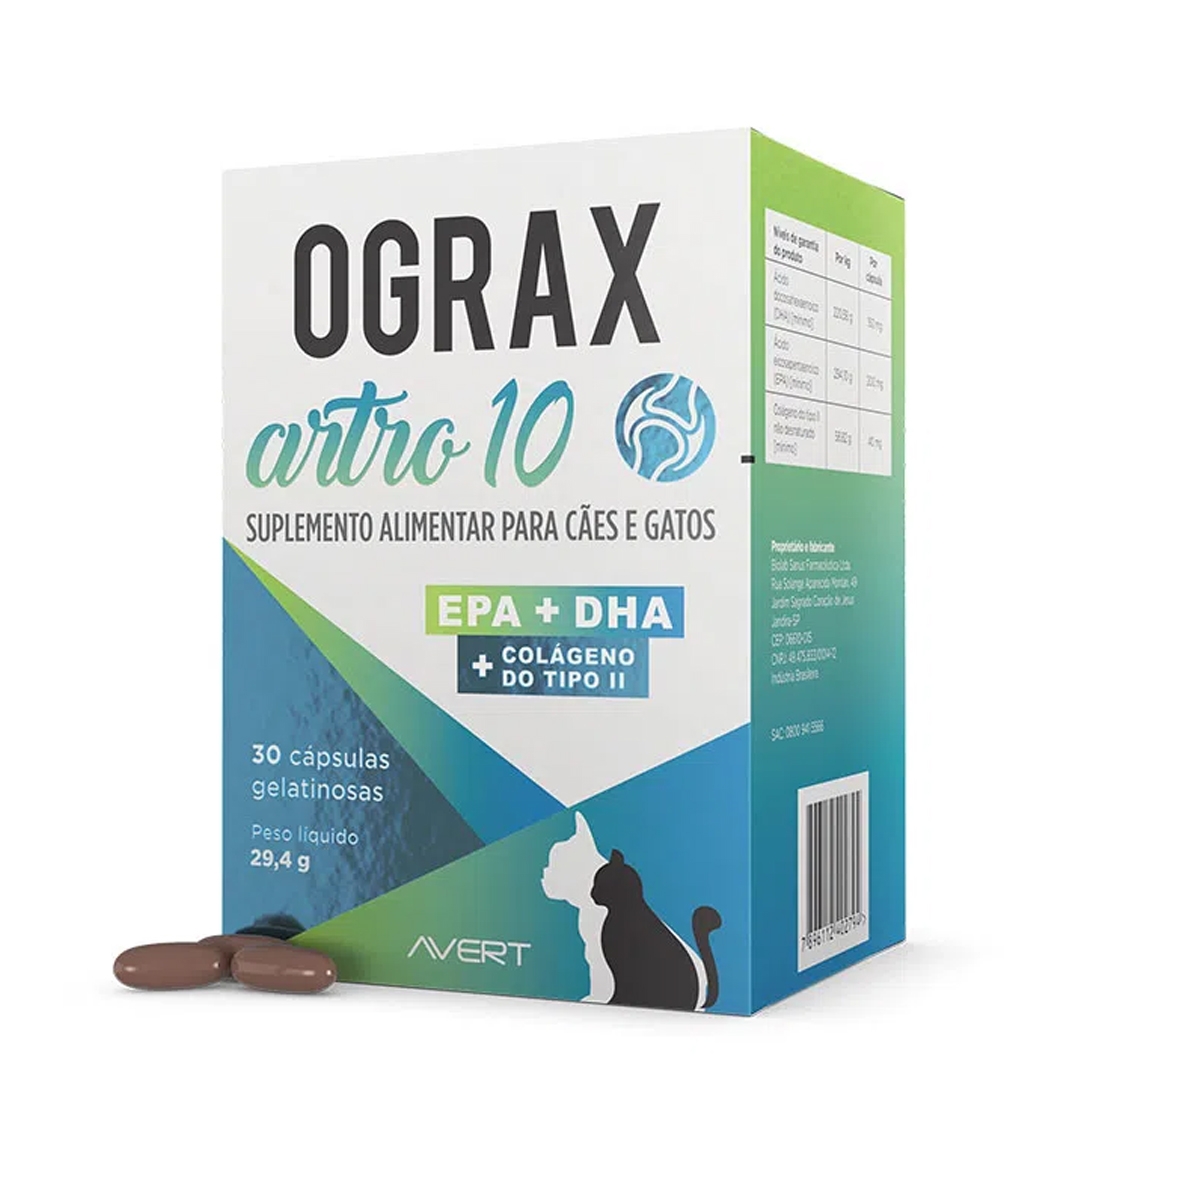 Ograx Artro 10 EPA+DHA 30 Capsulas